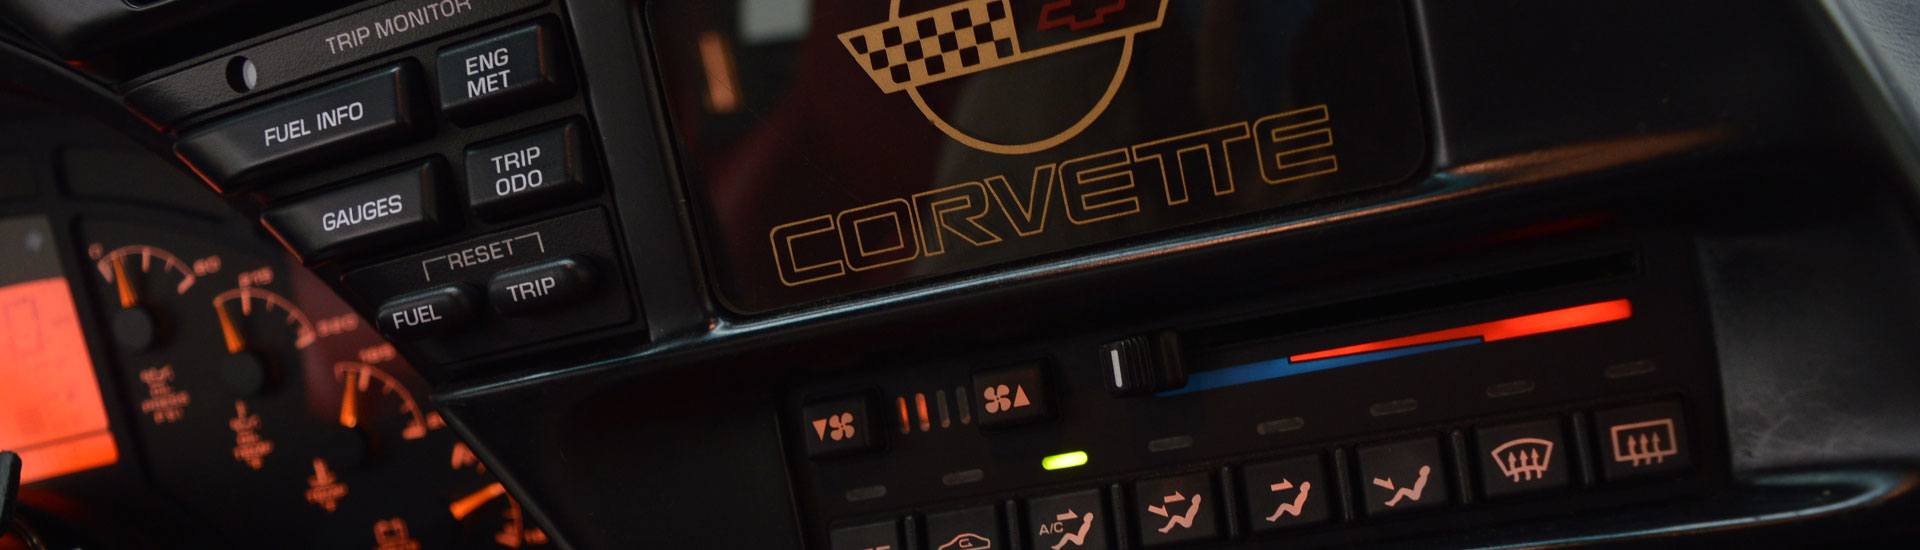 1994 Chevrolet Corvette Dash Kits